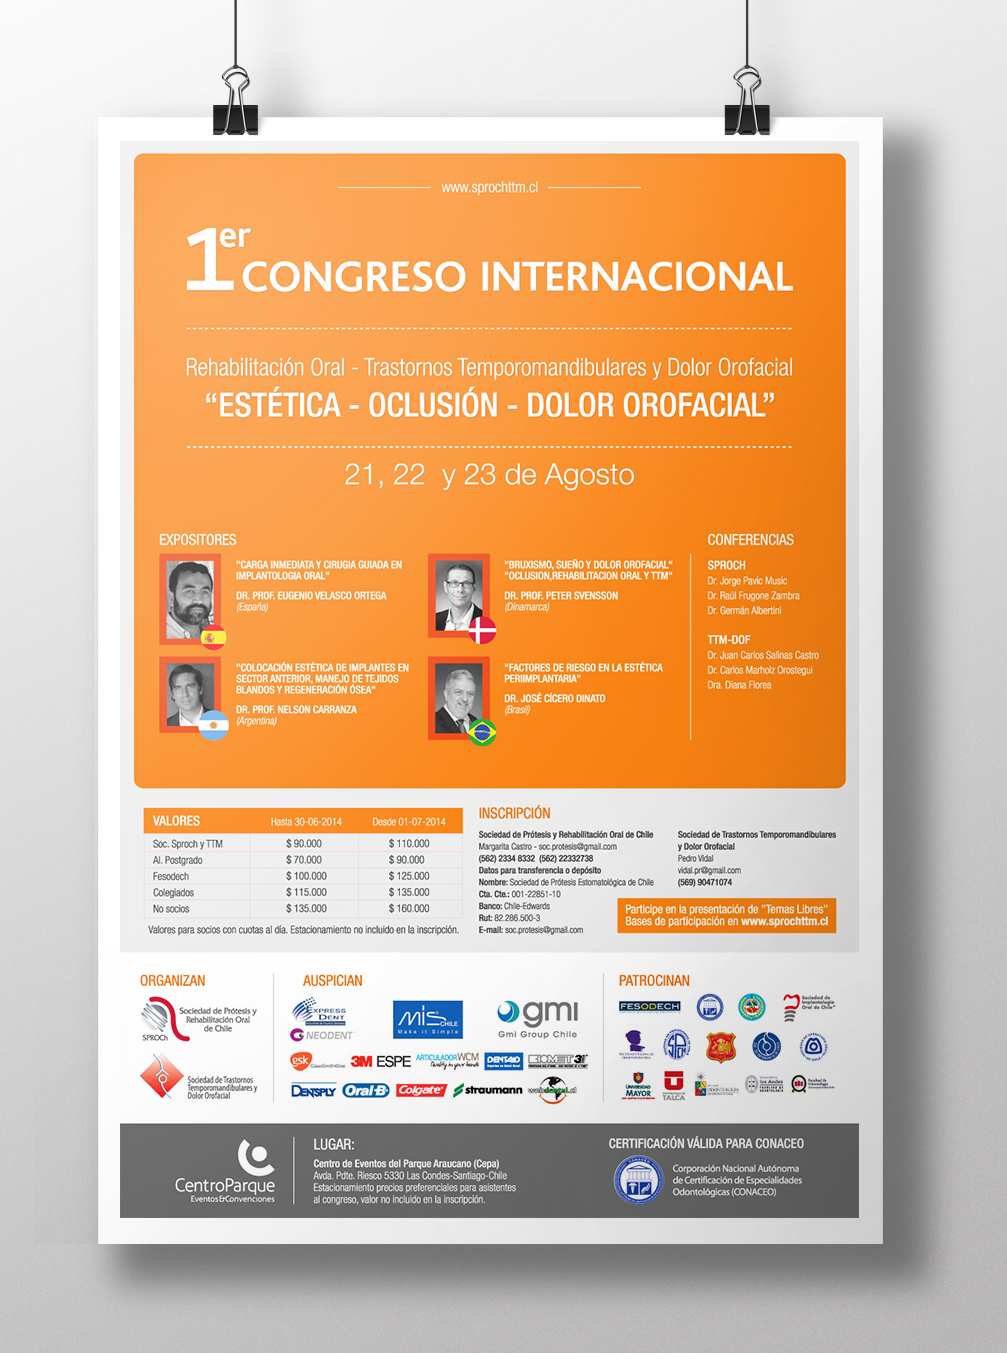 Poster “Congreso”